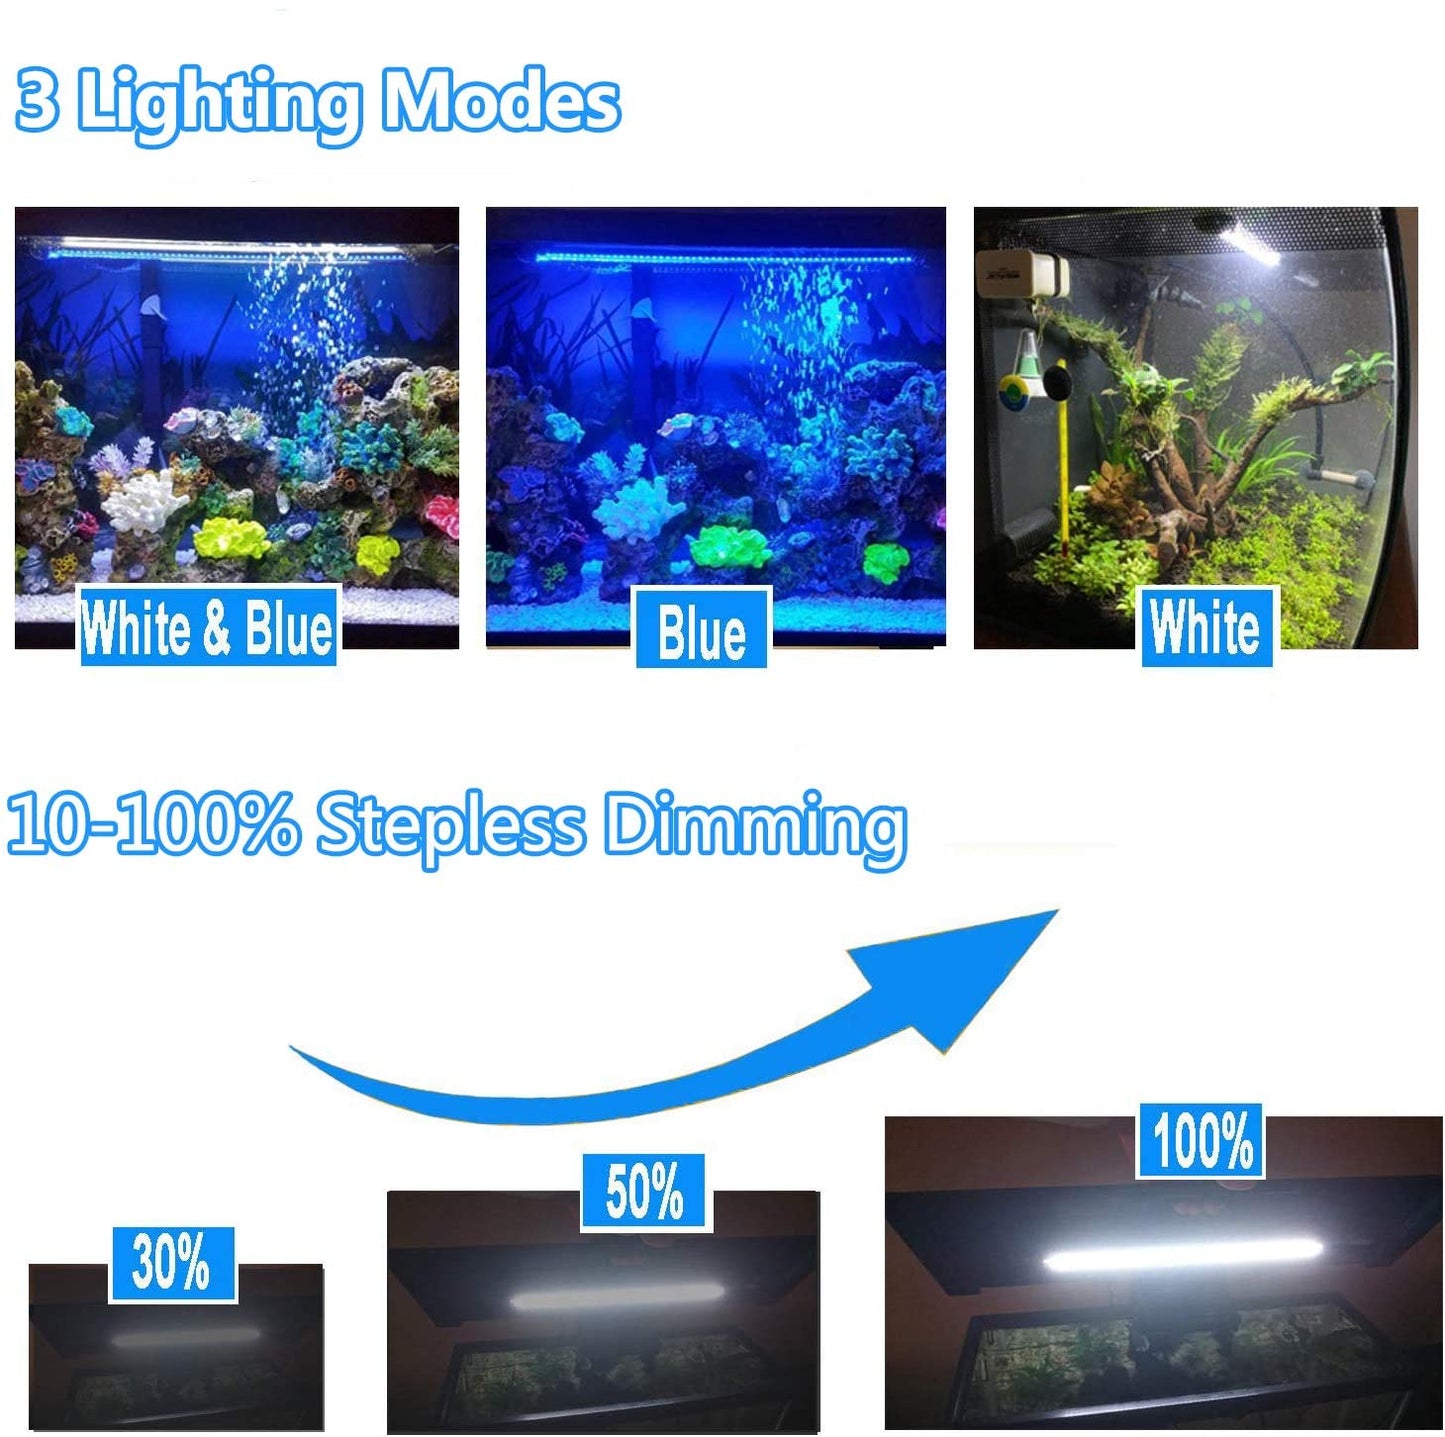 LED Aquarium Light Fish Tank Light with Timer Auto On/Off, White & Blue LED Light bar Stick for Fish Tank